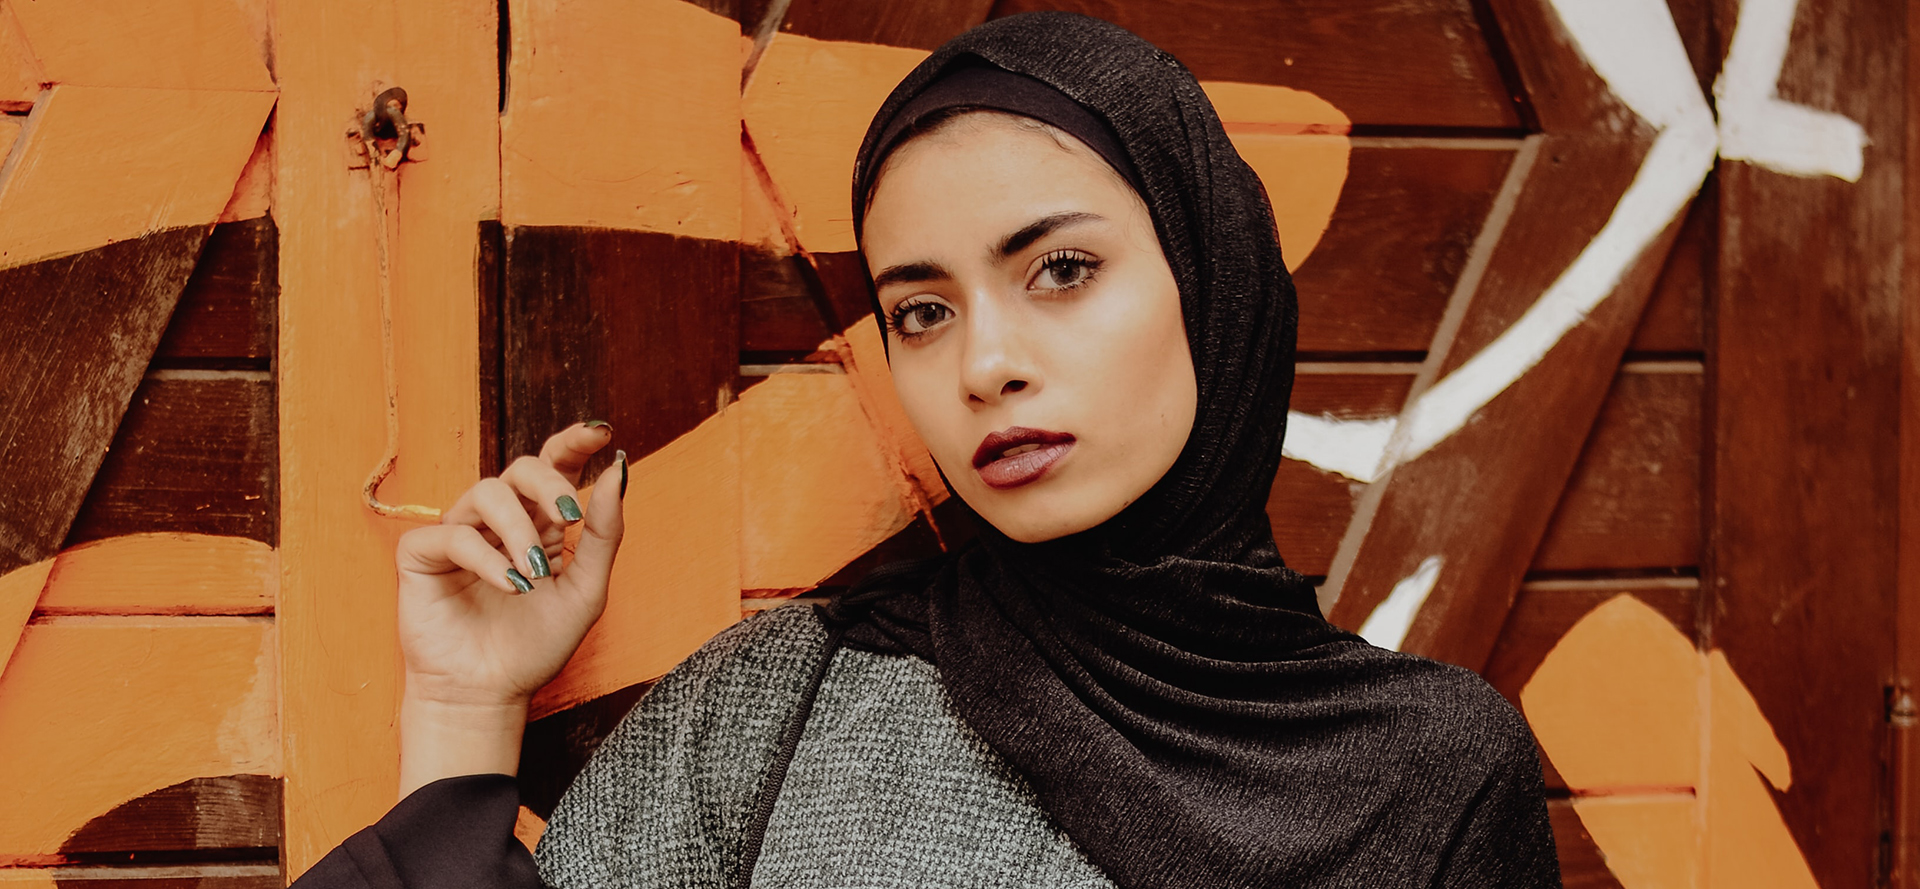 Arab woman in a black headscarf.